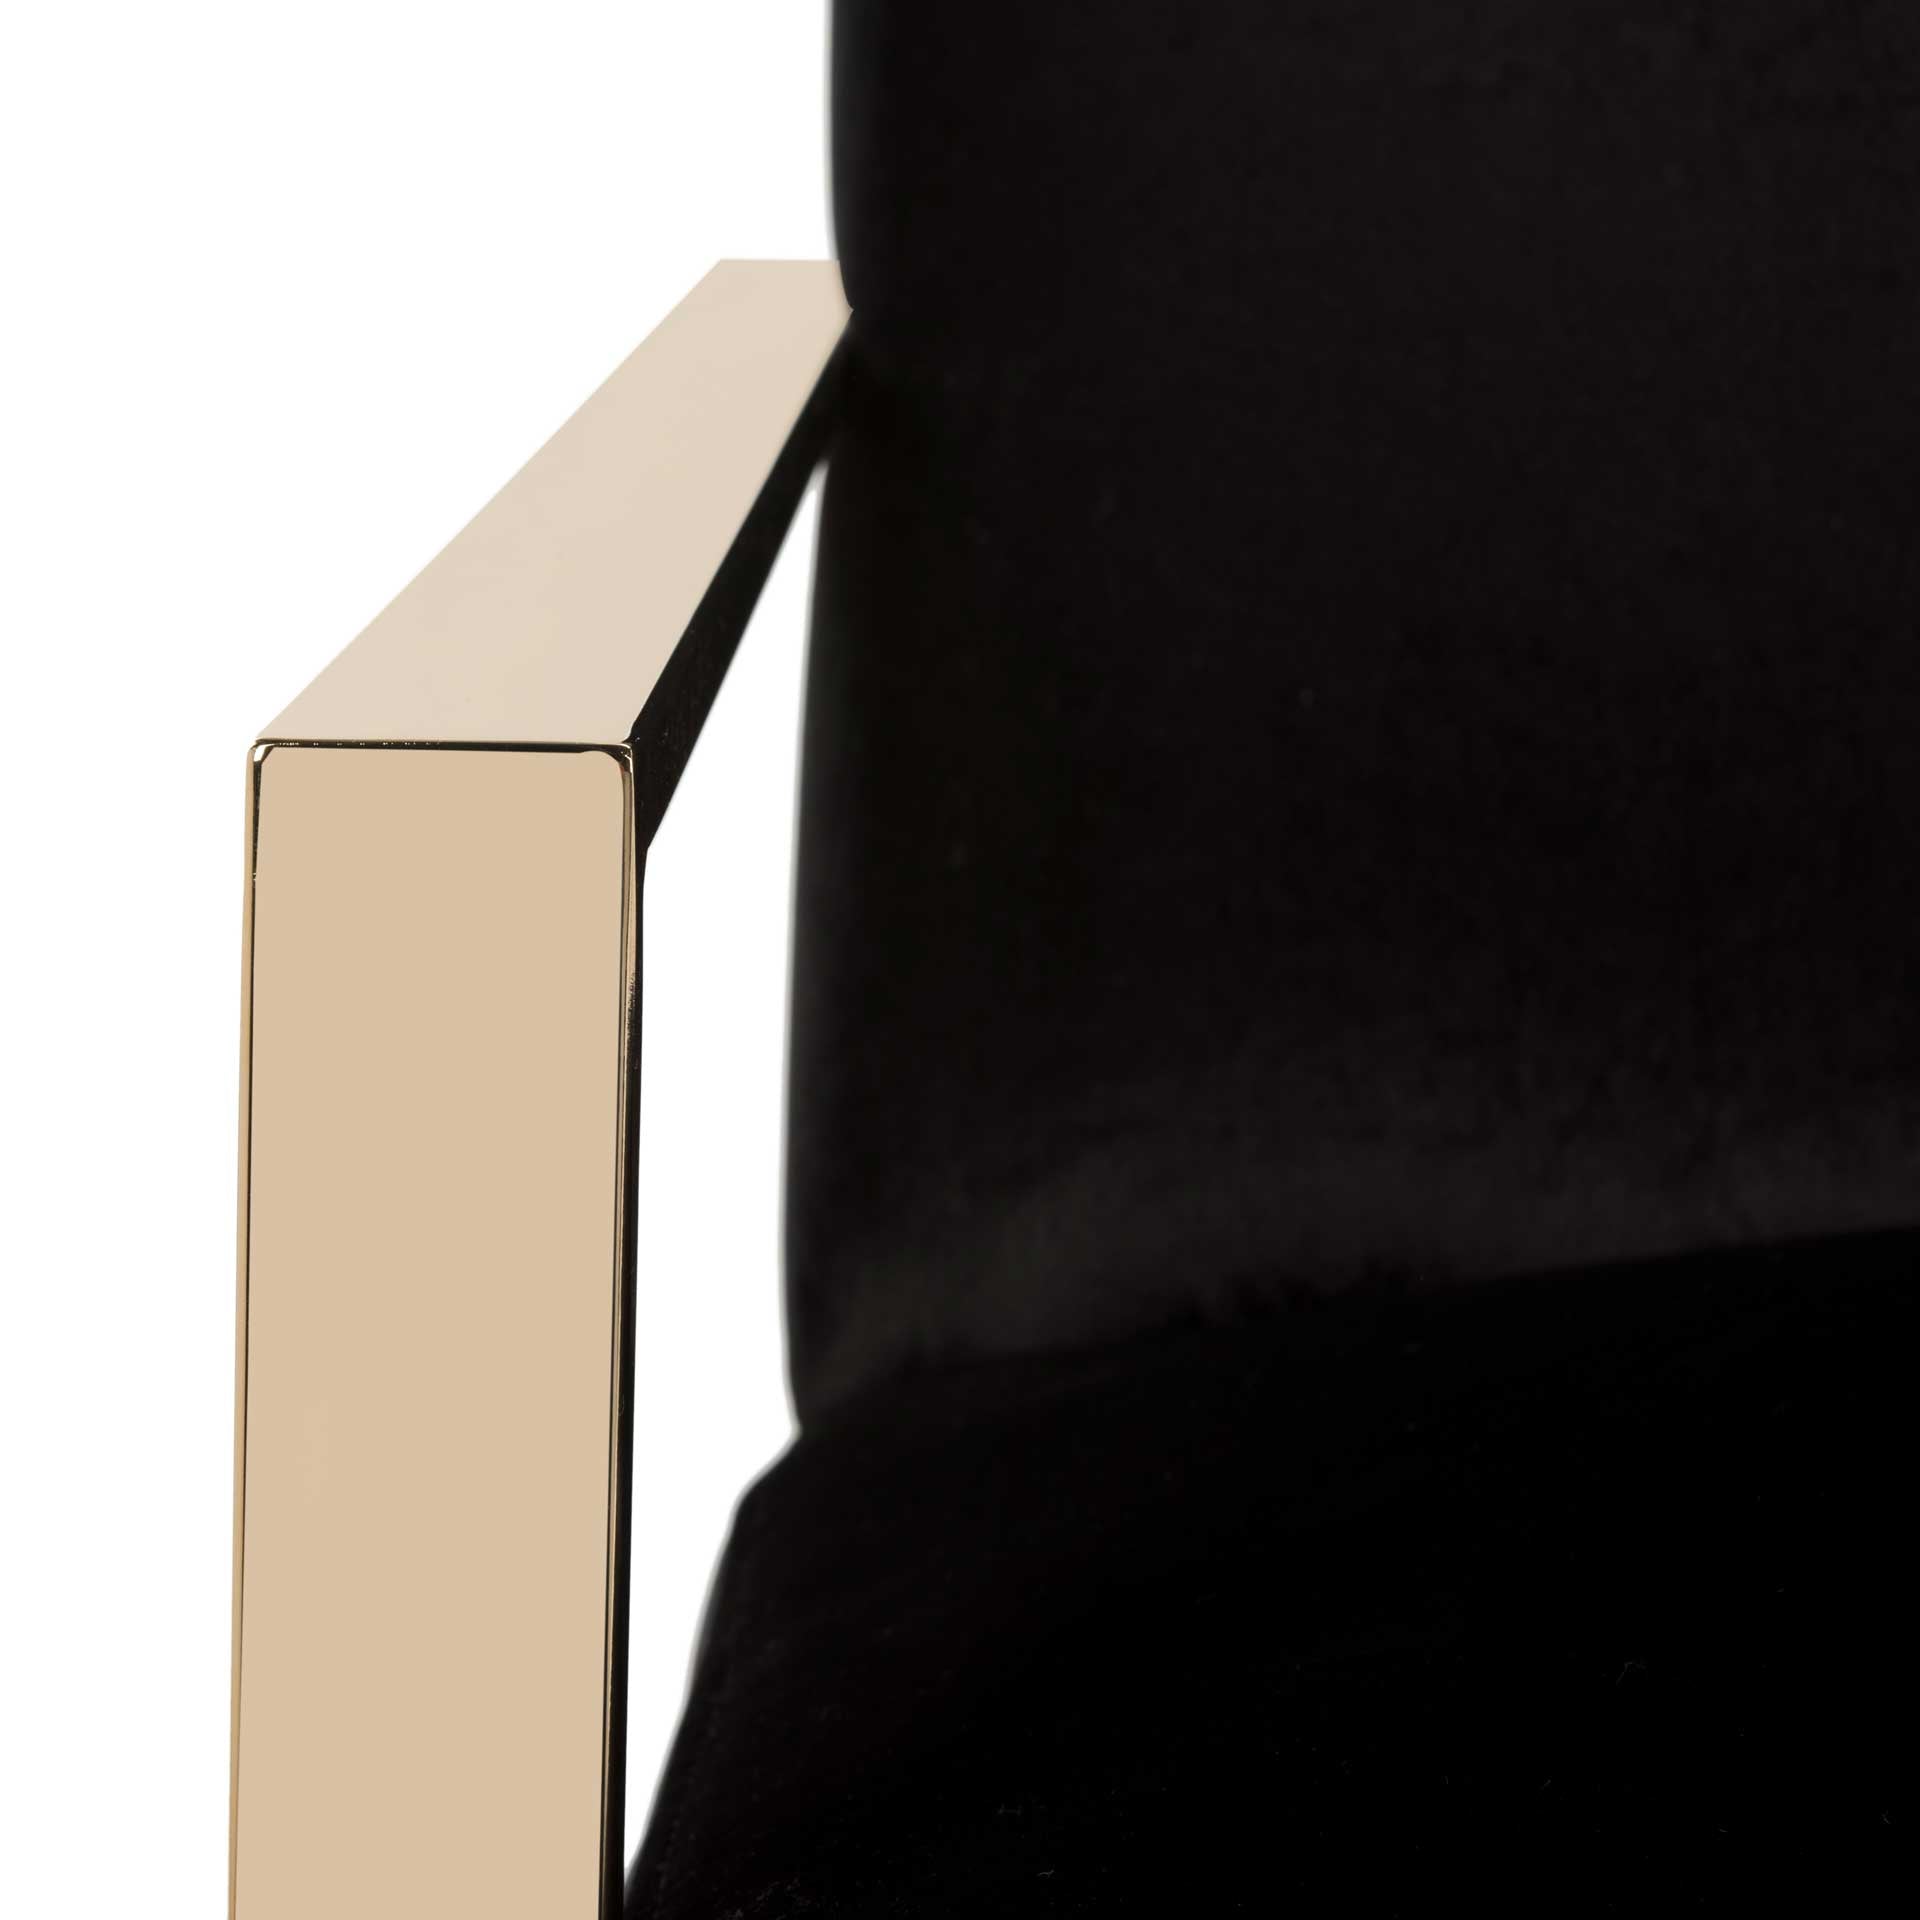 Orwen Accent Chair Black